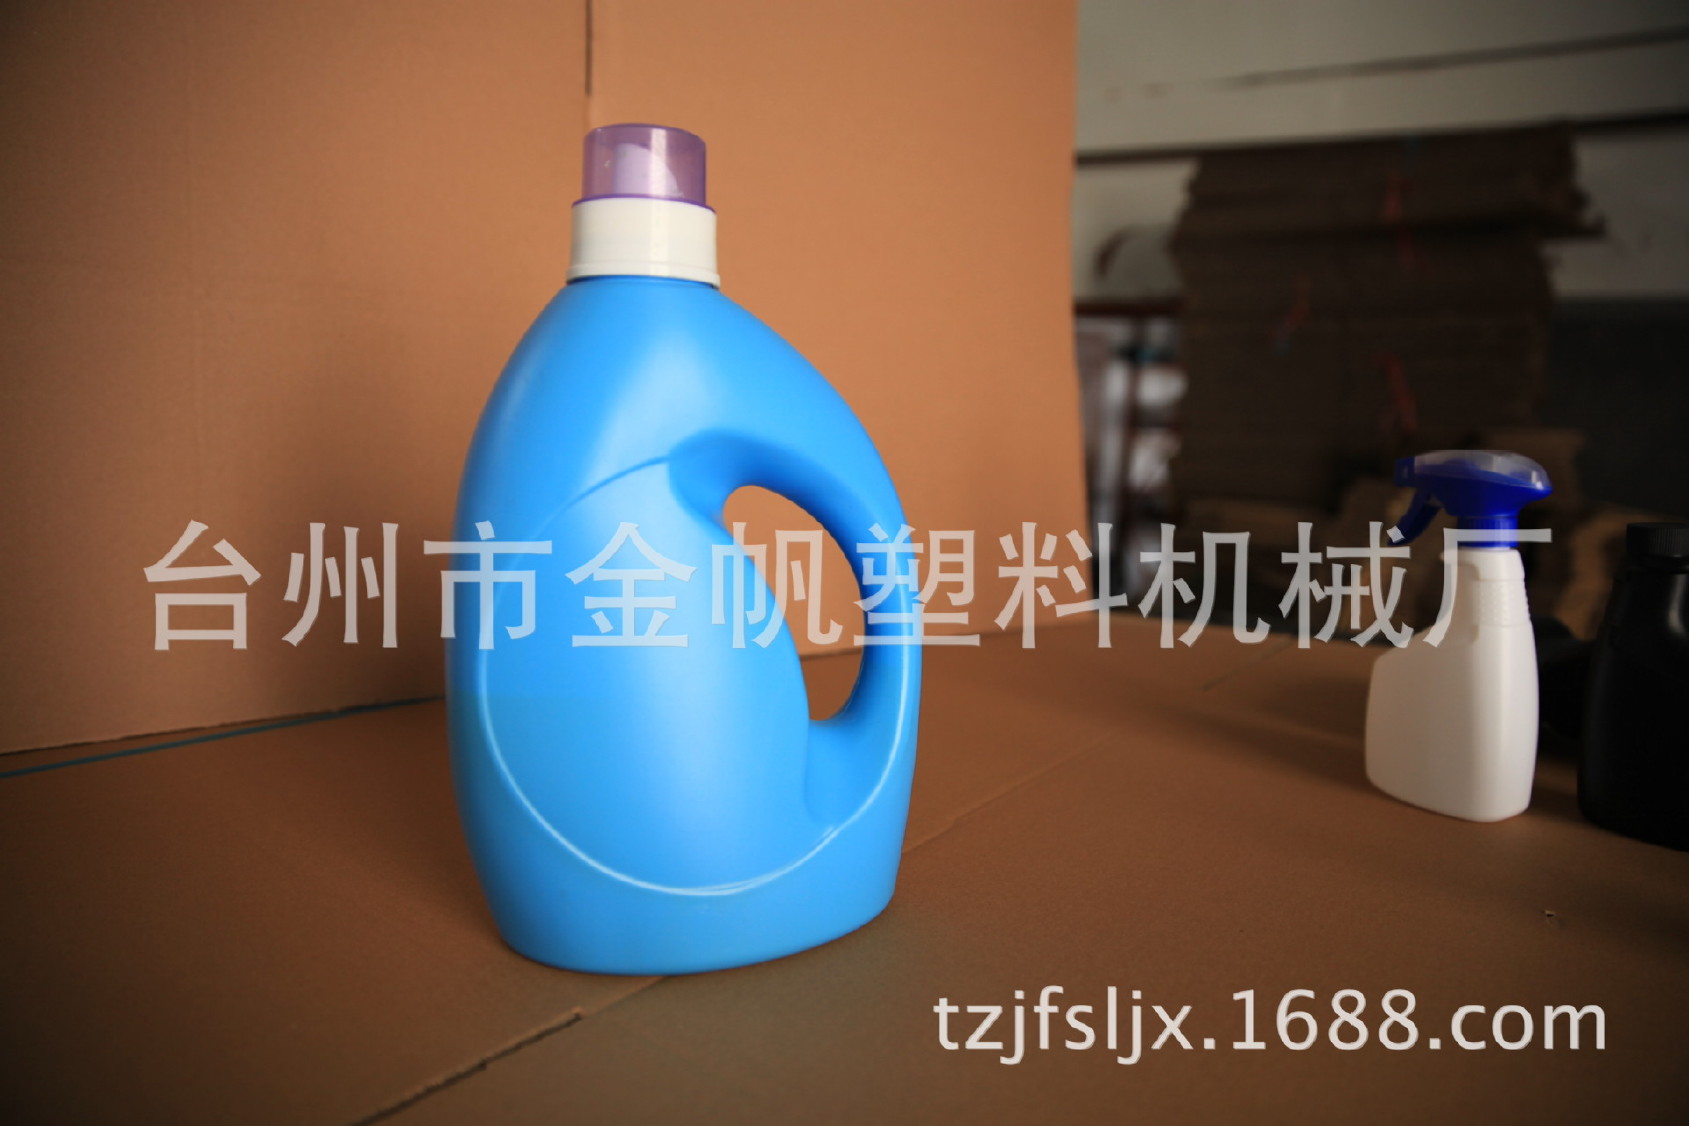 厂家直销 pe塑料瓶 洗衣液蓝色塑料瓶 多规格洗衣液桶批发示例图141